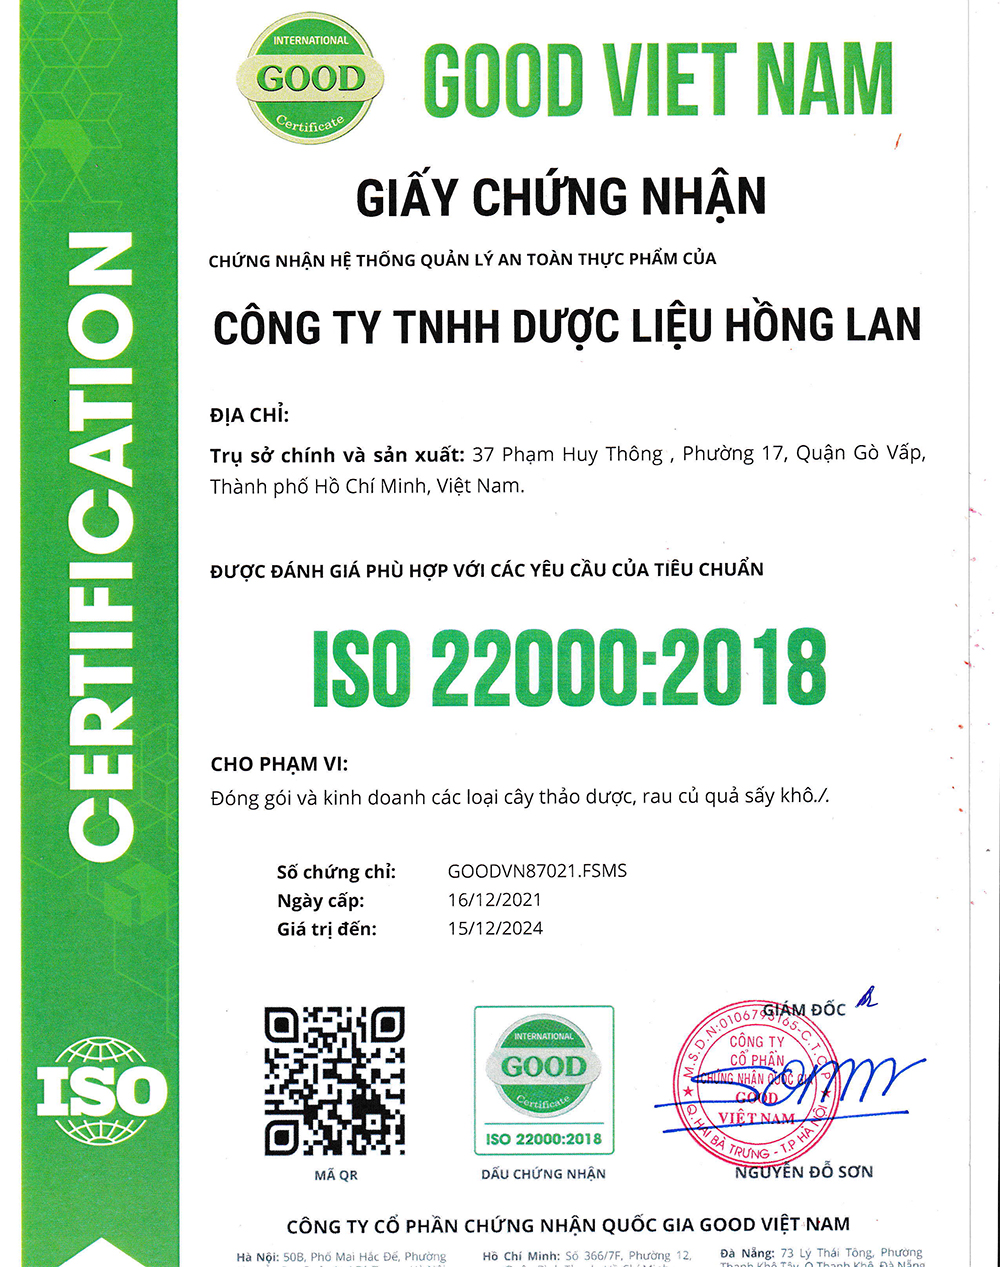 Trà túi lọc Cây Mắc Cỡ được sản xuất bởi Công ty TNHH Dược Liệu Hồng Lan theo hệ thống quản lý an toàn thực phẩm ISO 22000:2018 được cấp bởi công ty cổ phần chứng nhận Quốc Gia Good Việt Nam (Good Viet Nam Certification Joint Stock Company)